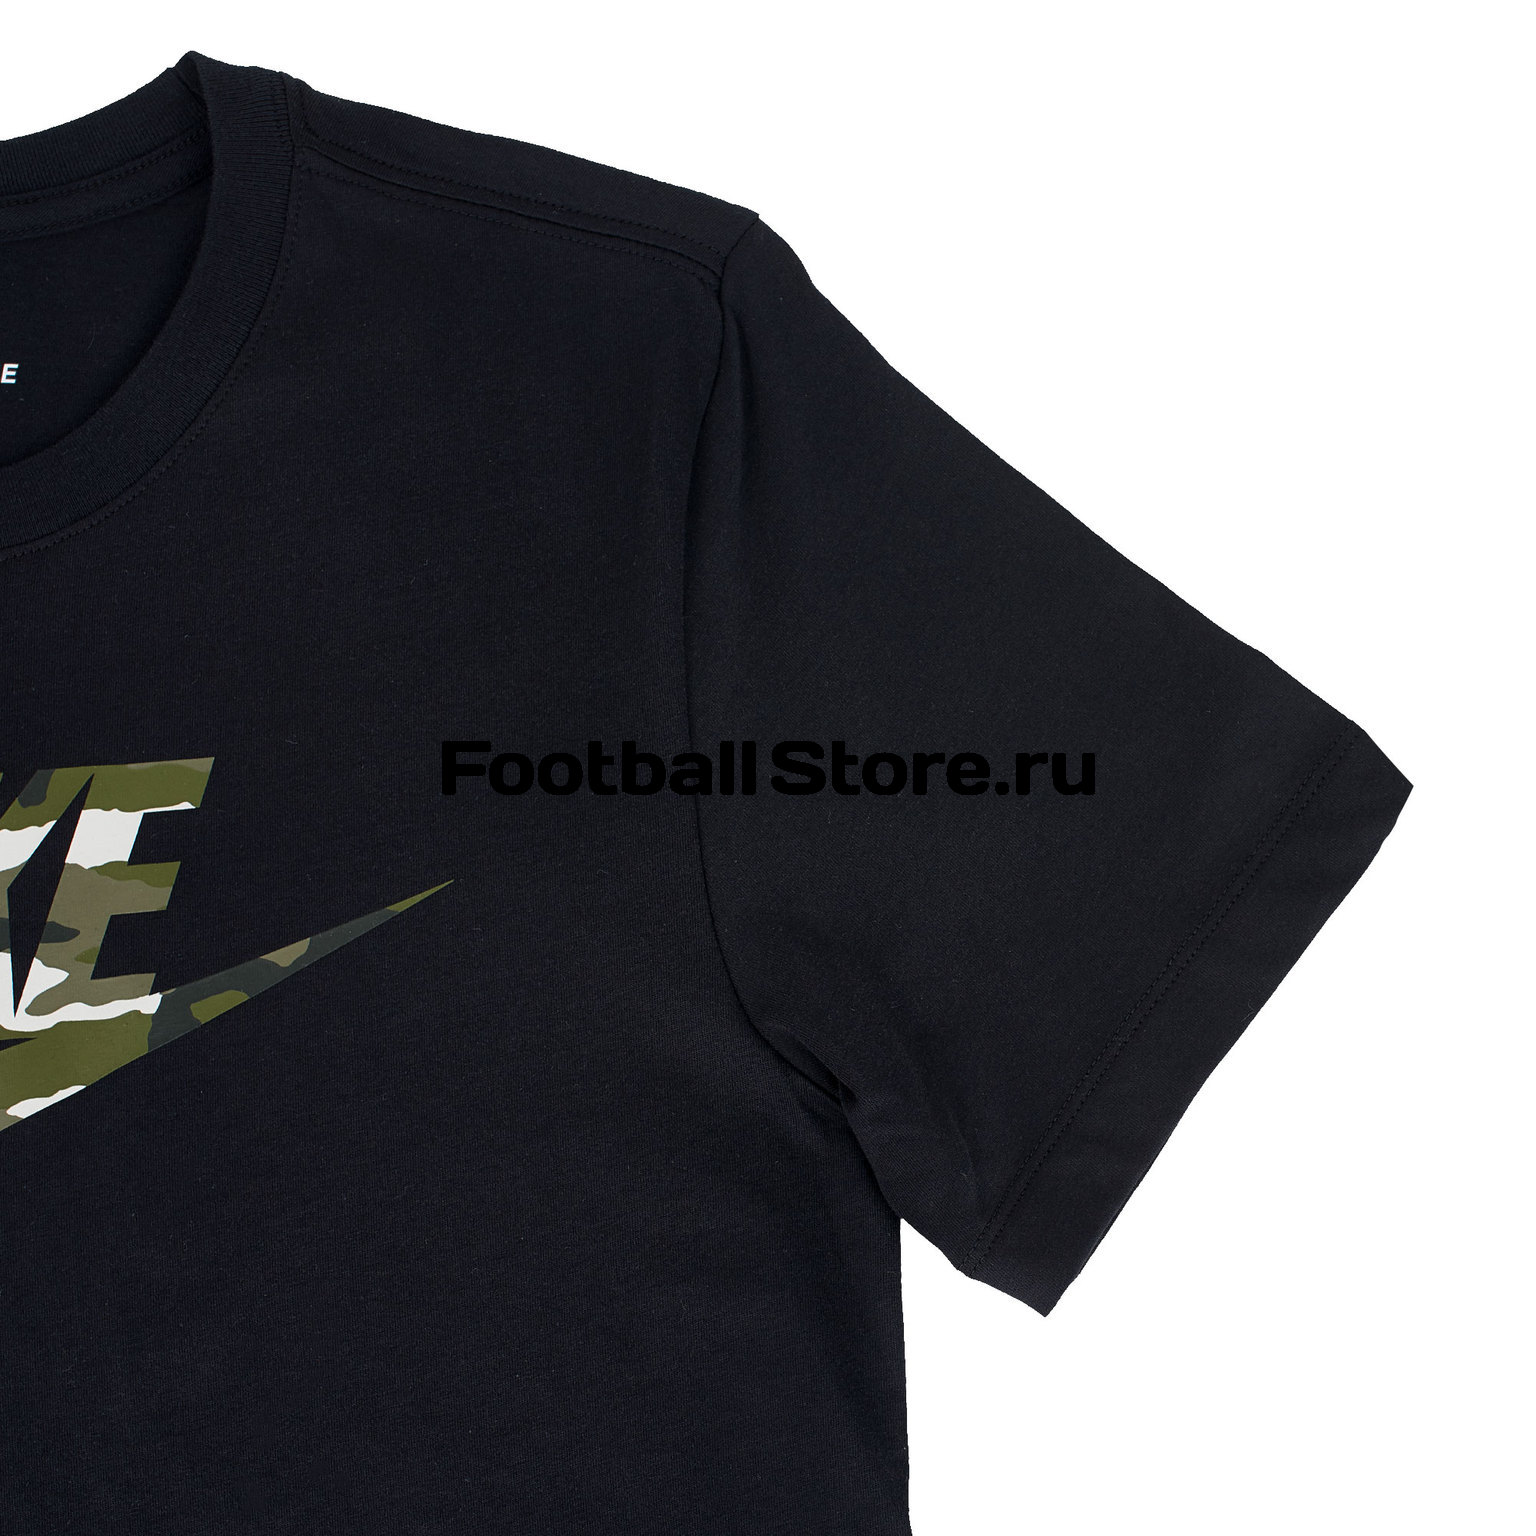 Футболка хлопковая Nike Tee Camo CI1078-010